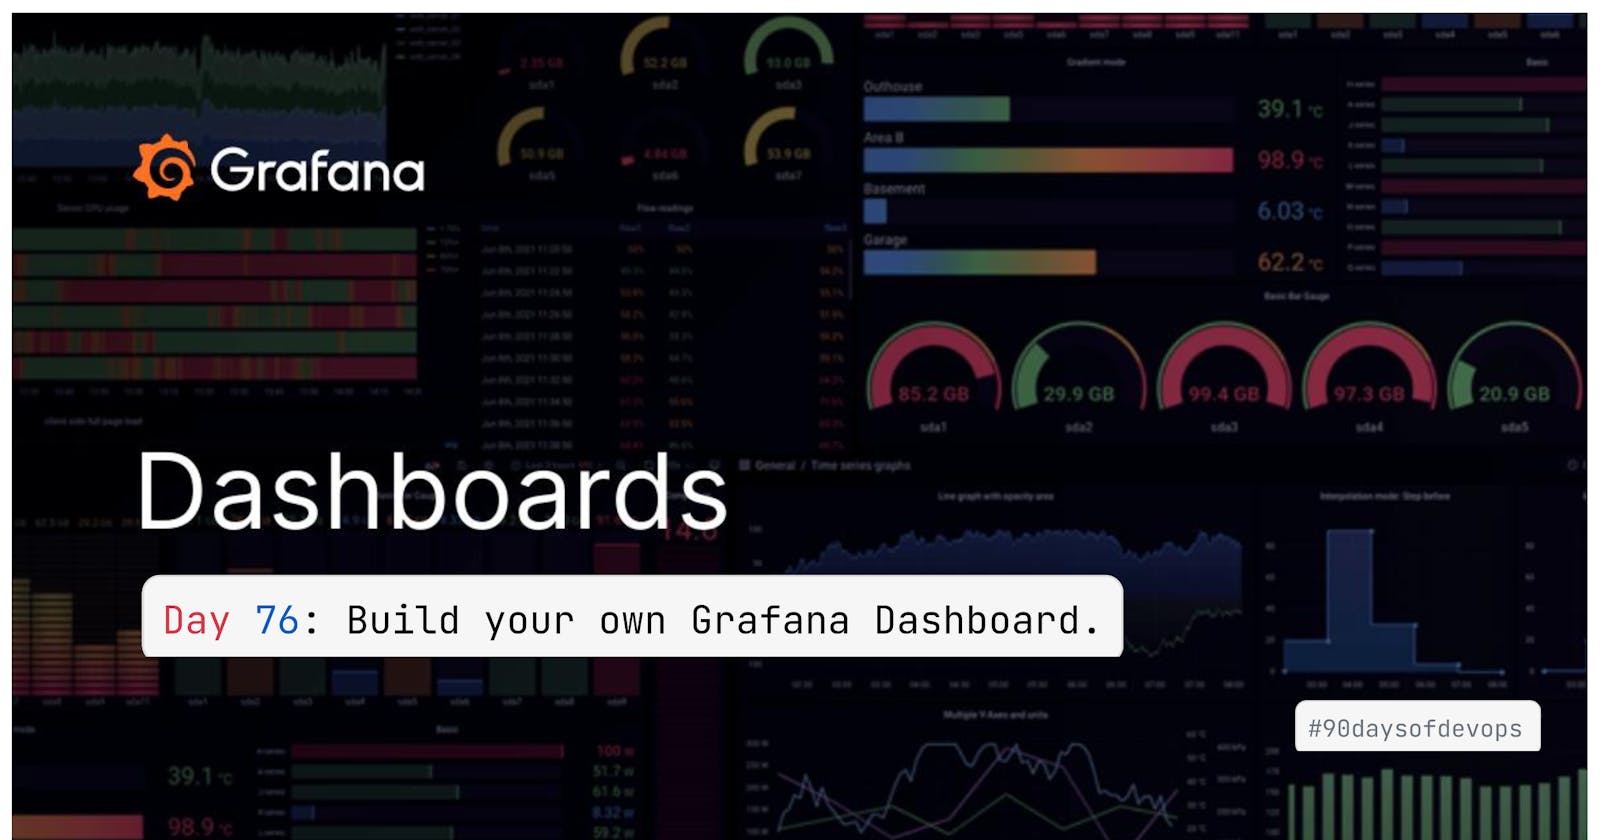 Day 76: Build your own Grafana Dashboard.